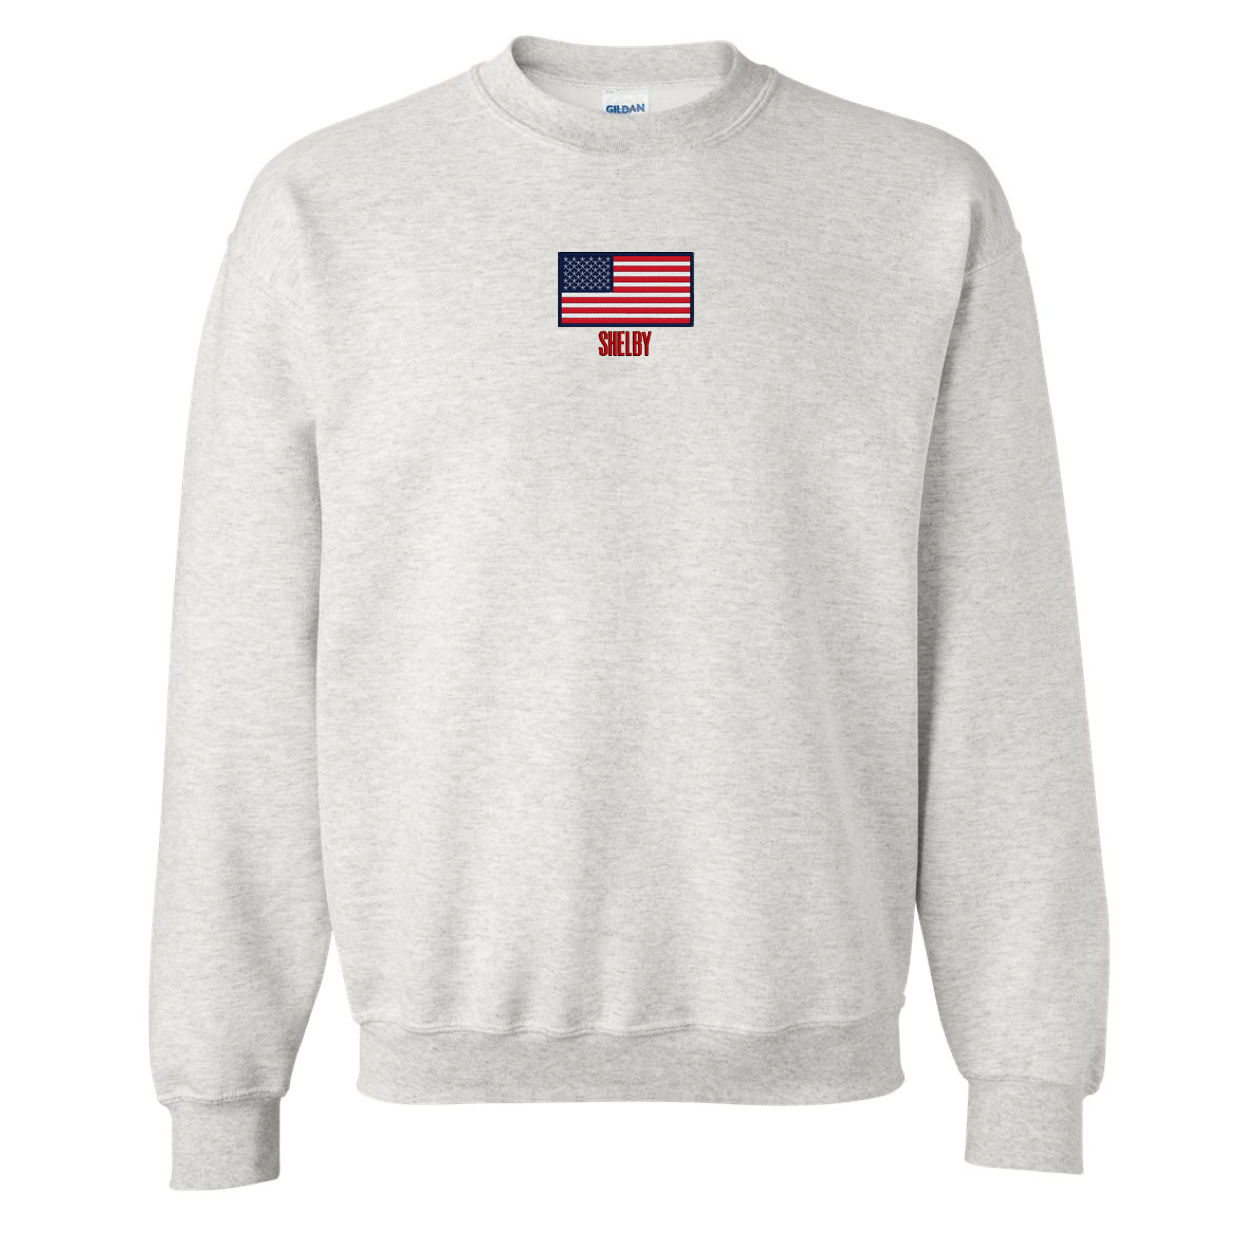 Make it Yours™ 'American Flag' Crewneck Sweatshirt